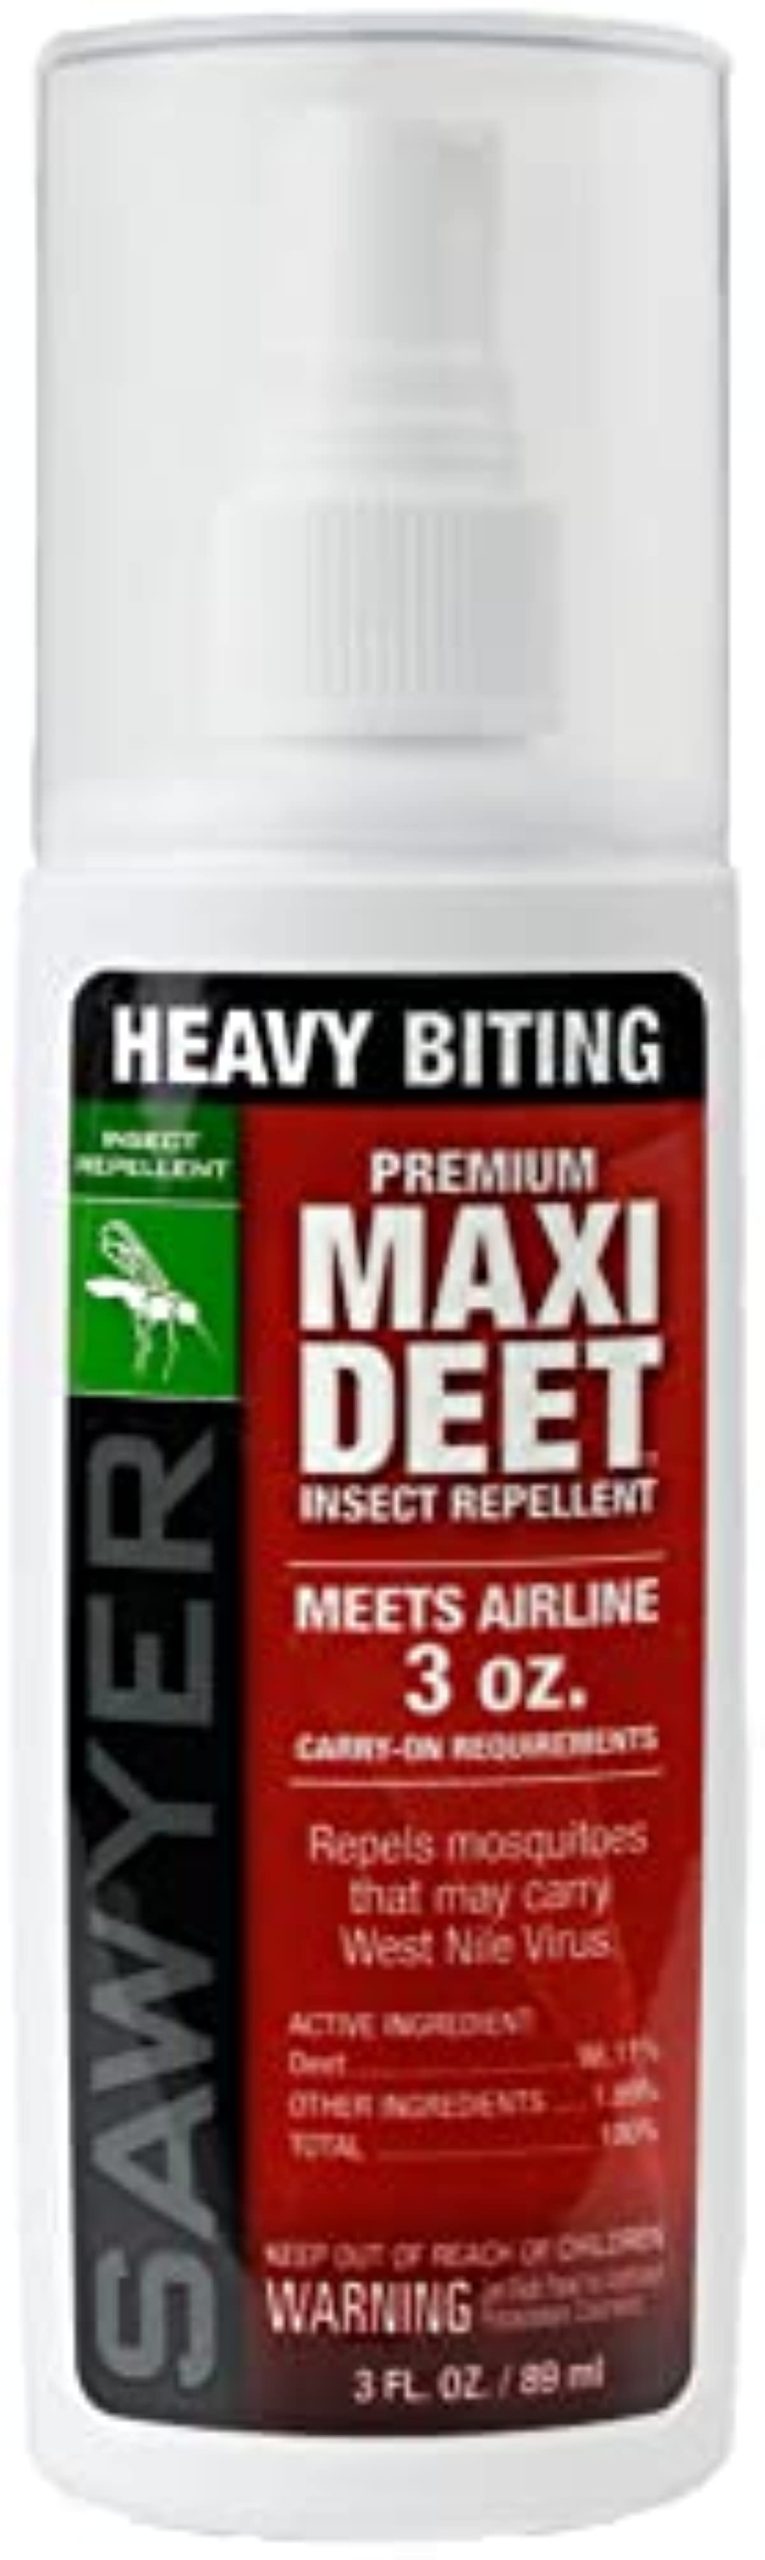 Sawyer Products Premium MAXI DEET, 100{72c3ac4e01c94131448020877f8c0d305fca78fac289b87e01e85261b9126fdd} DEET Insect Repellent